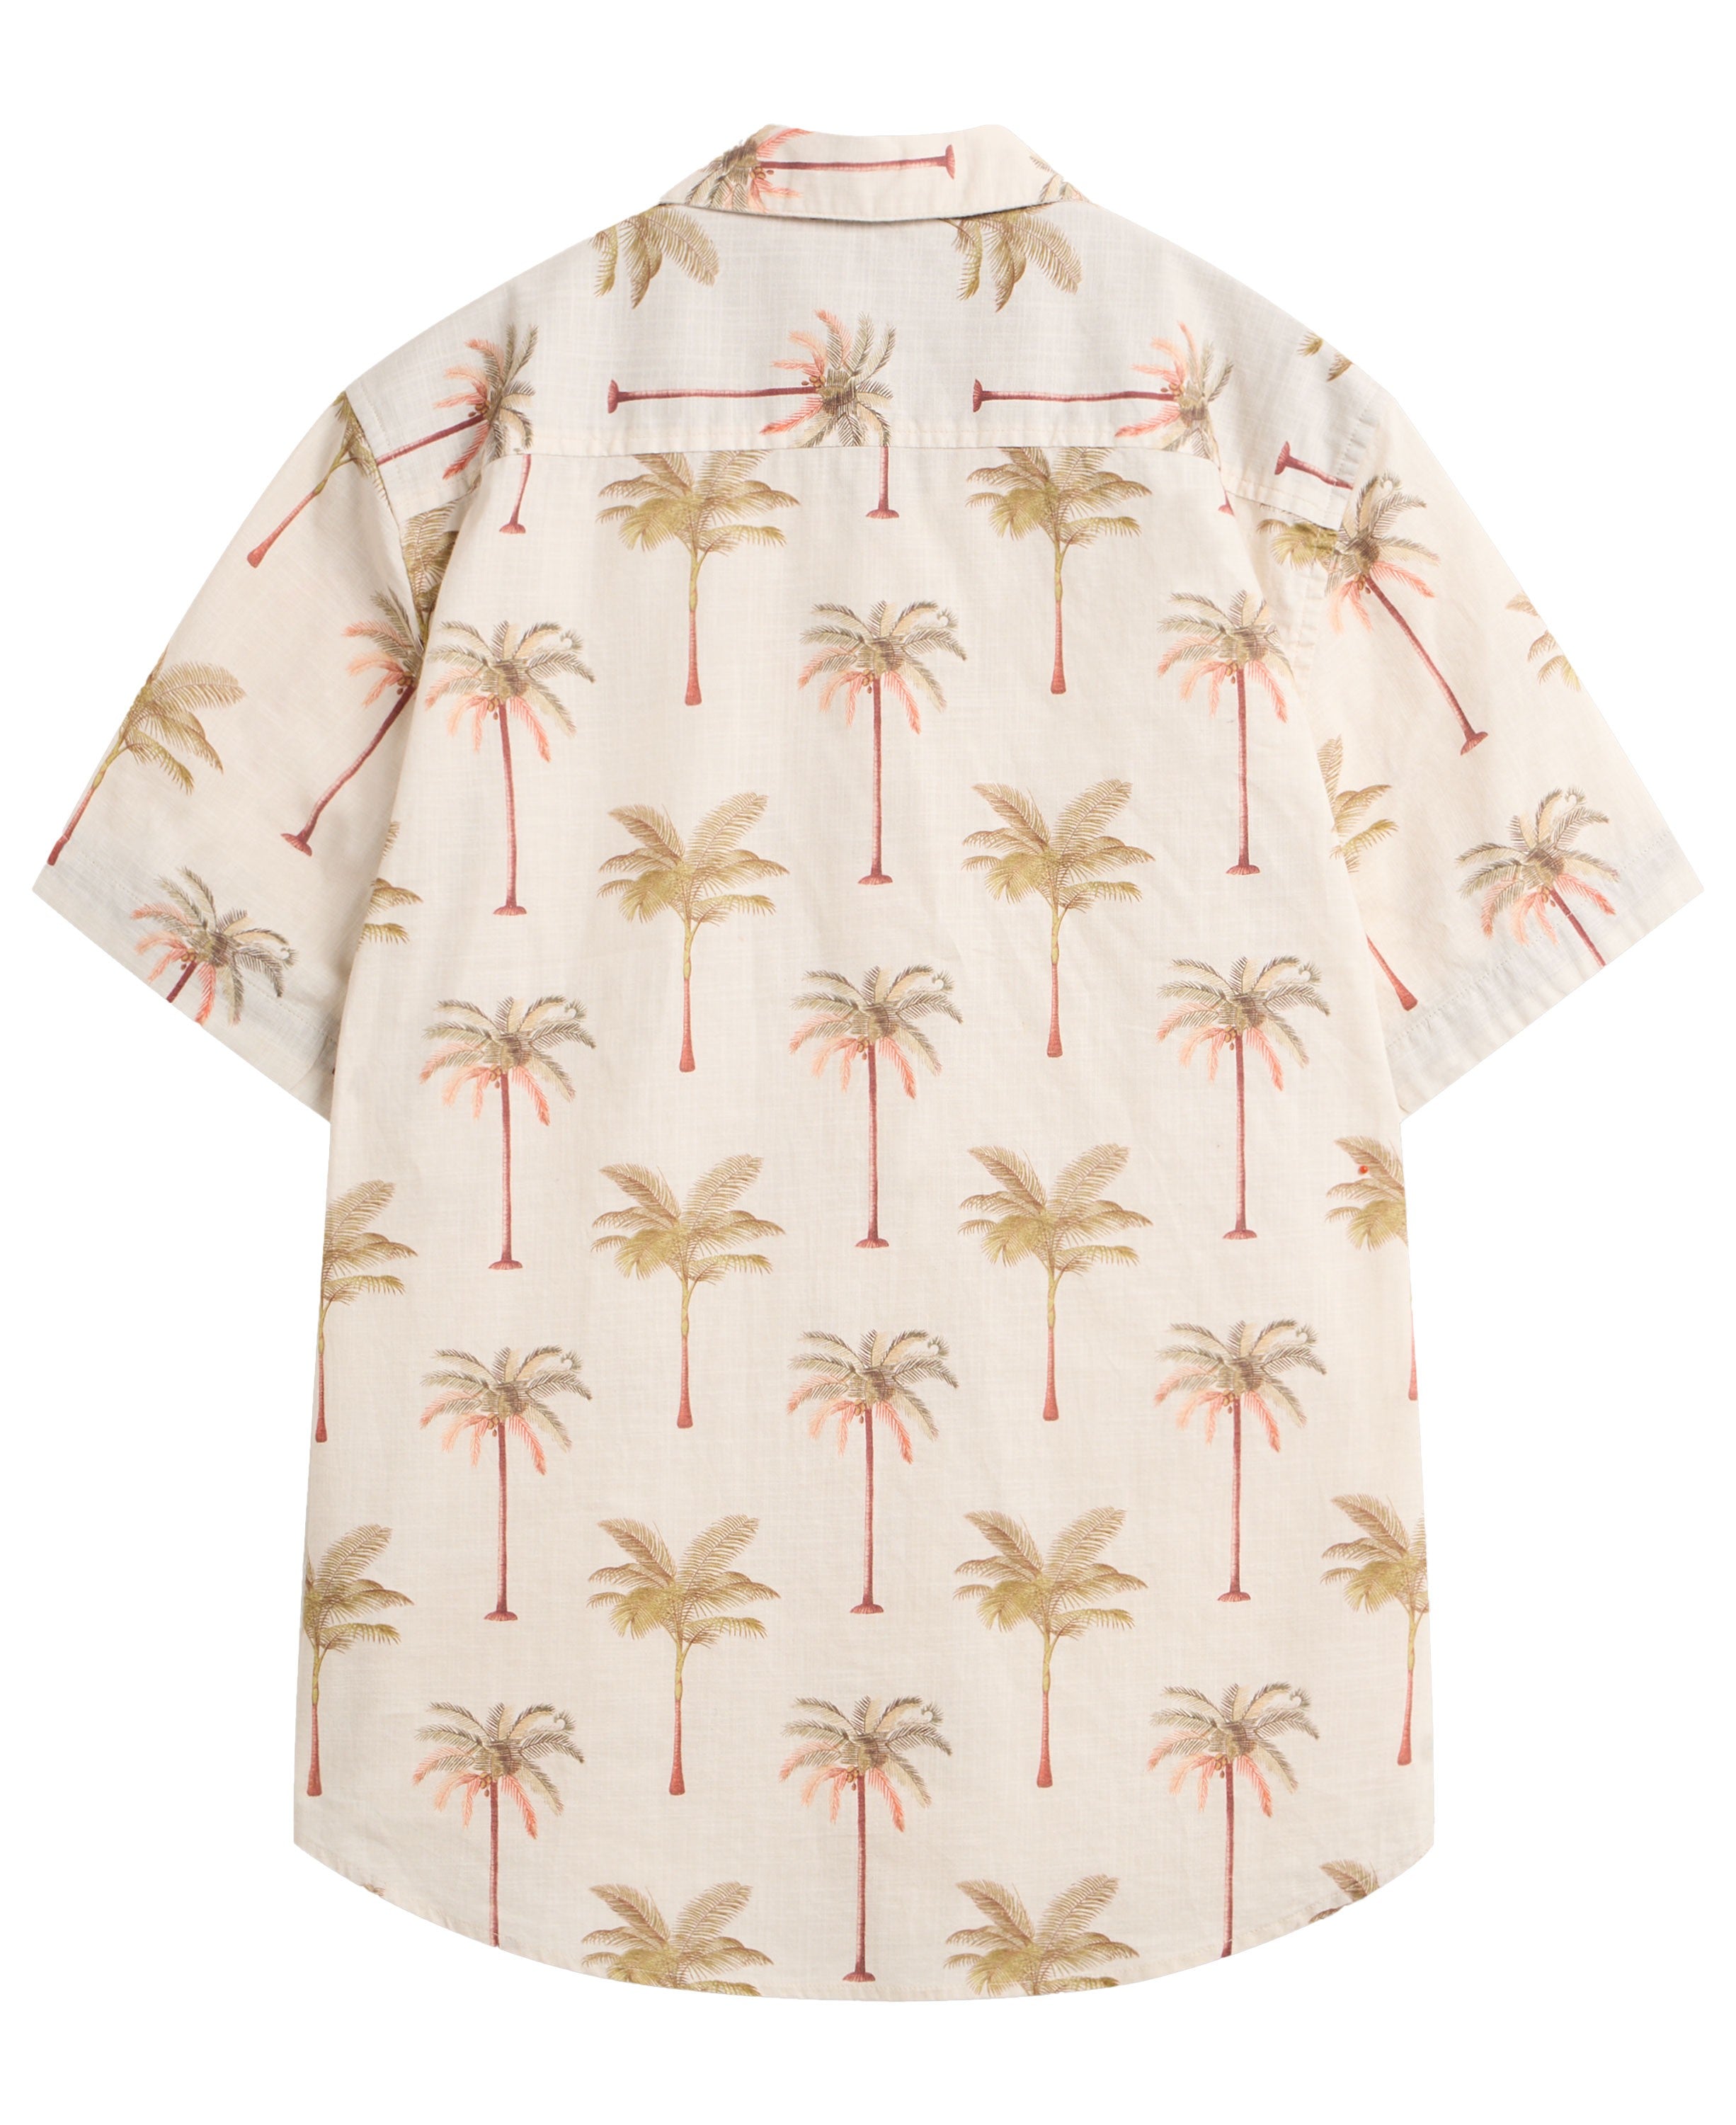 Palm Tree Printed Shirt - Natural Print